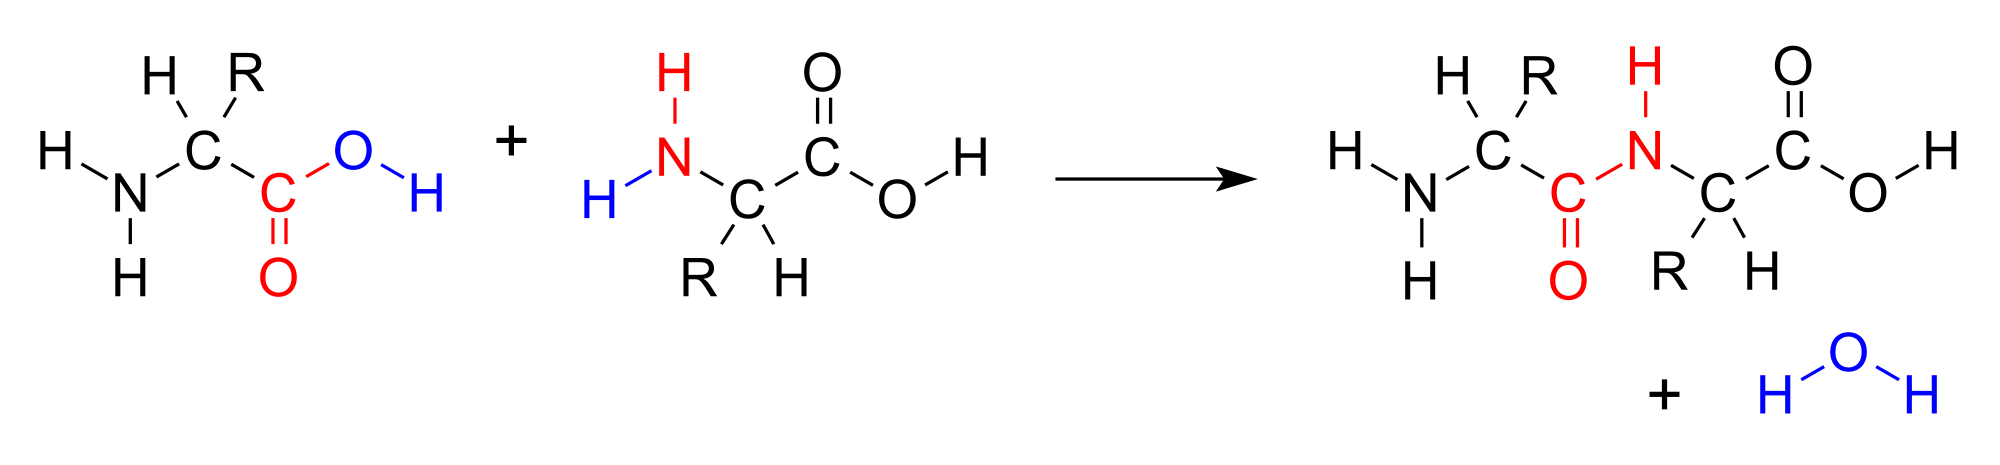 Estructura de una reacción de condensación genérica